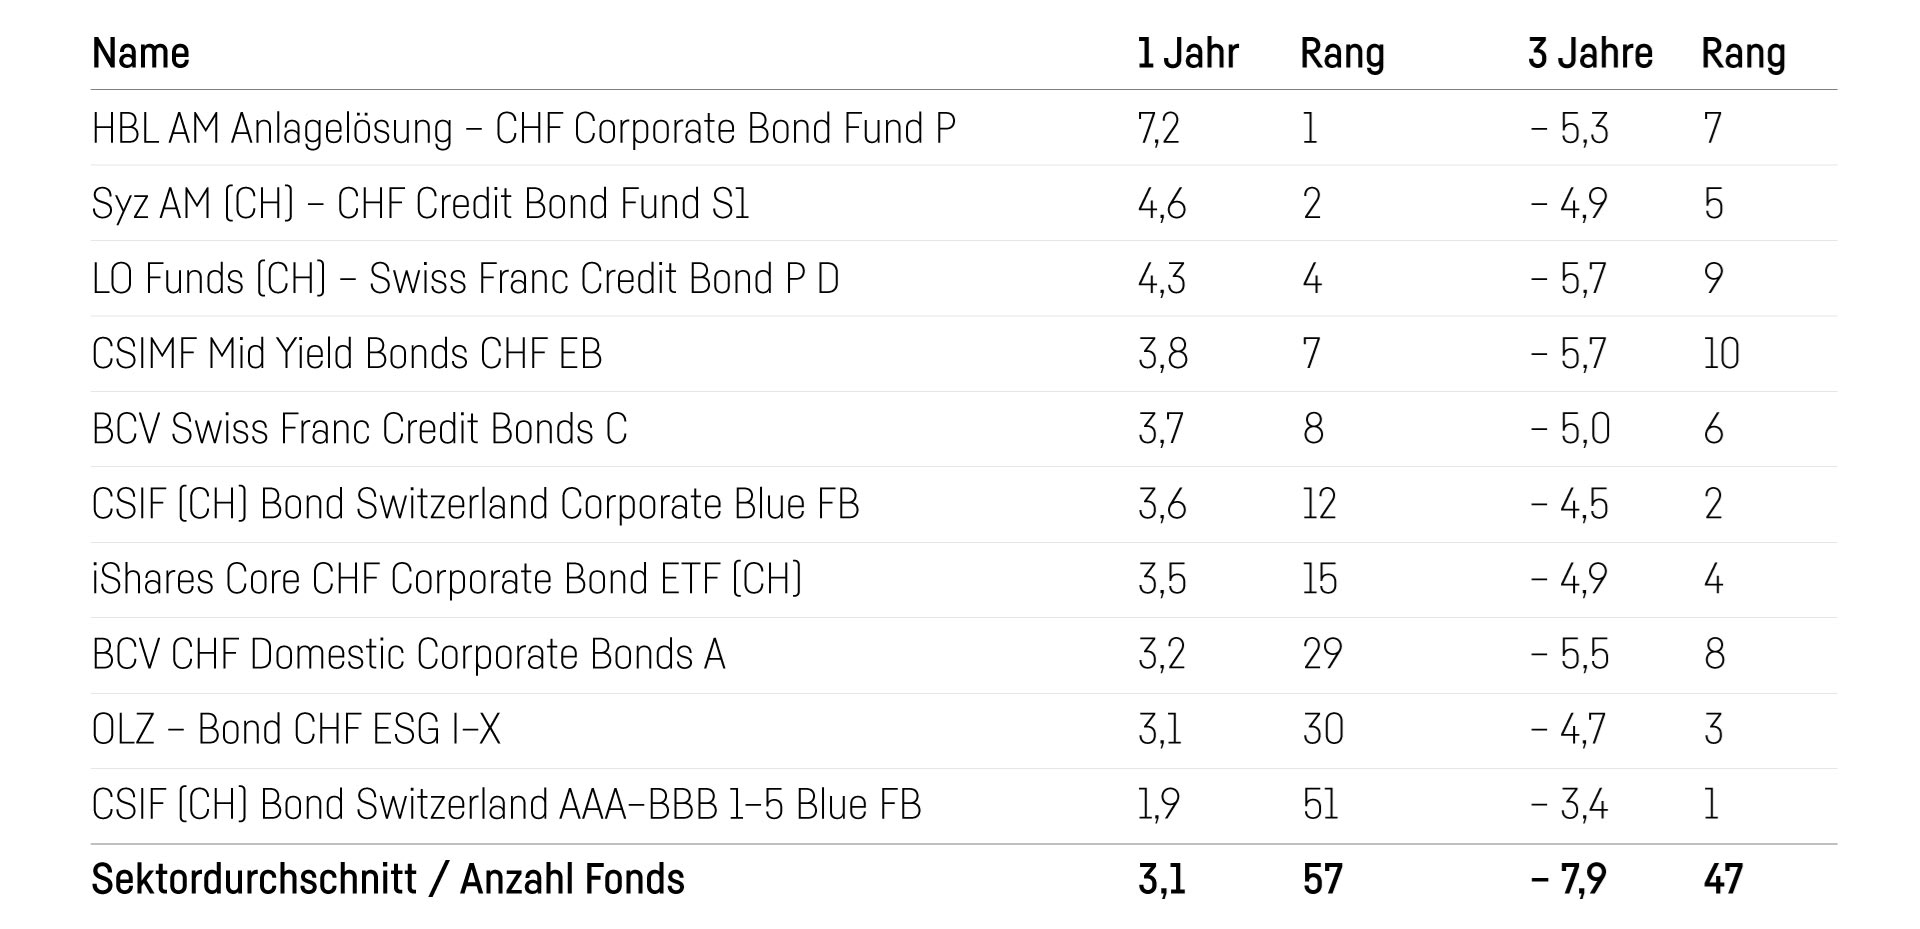 Frankenobligationen-Fonds im Vergleich